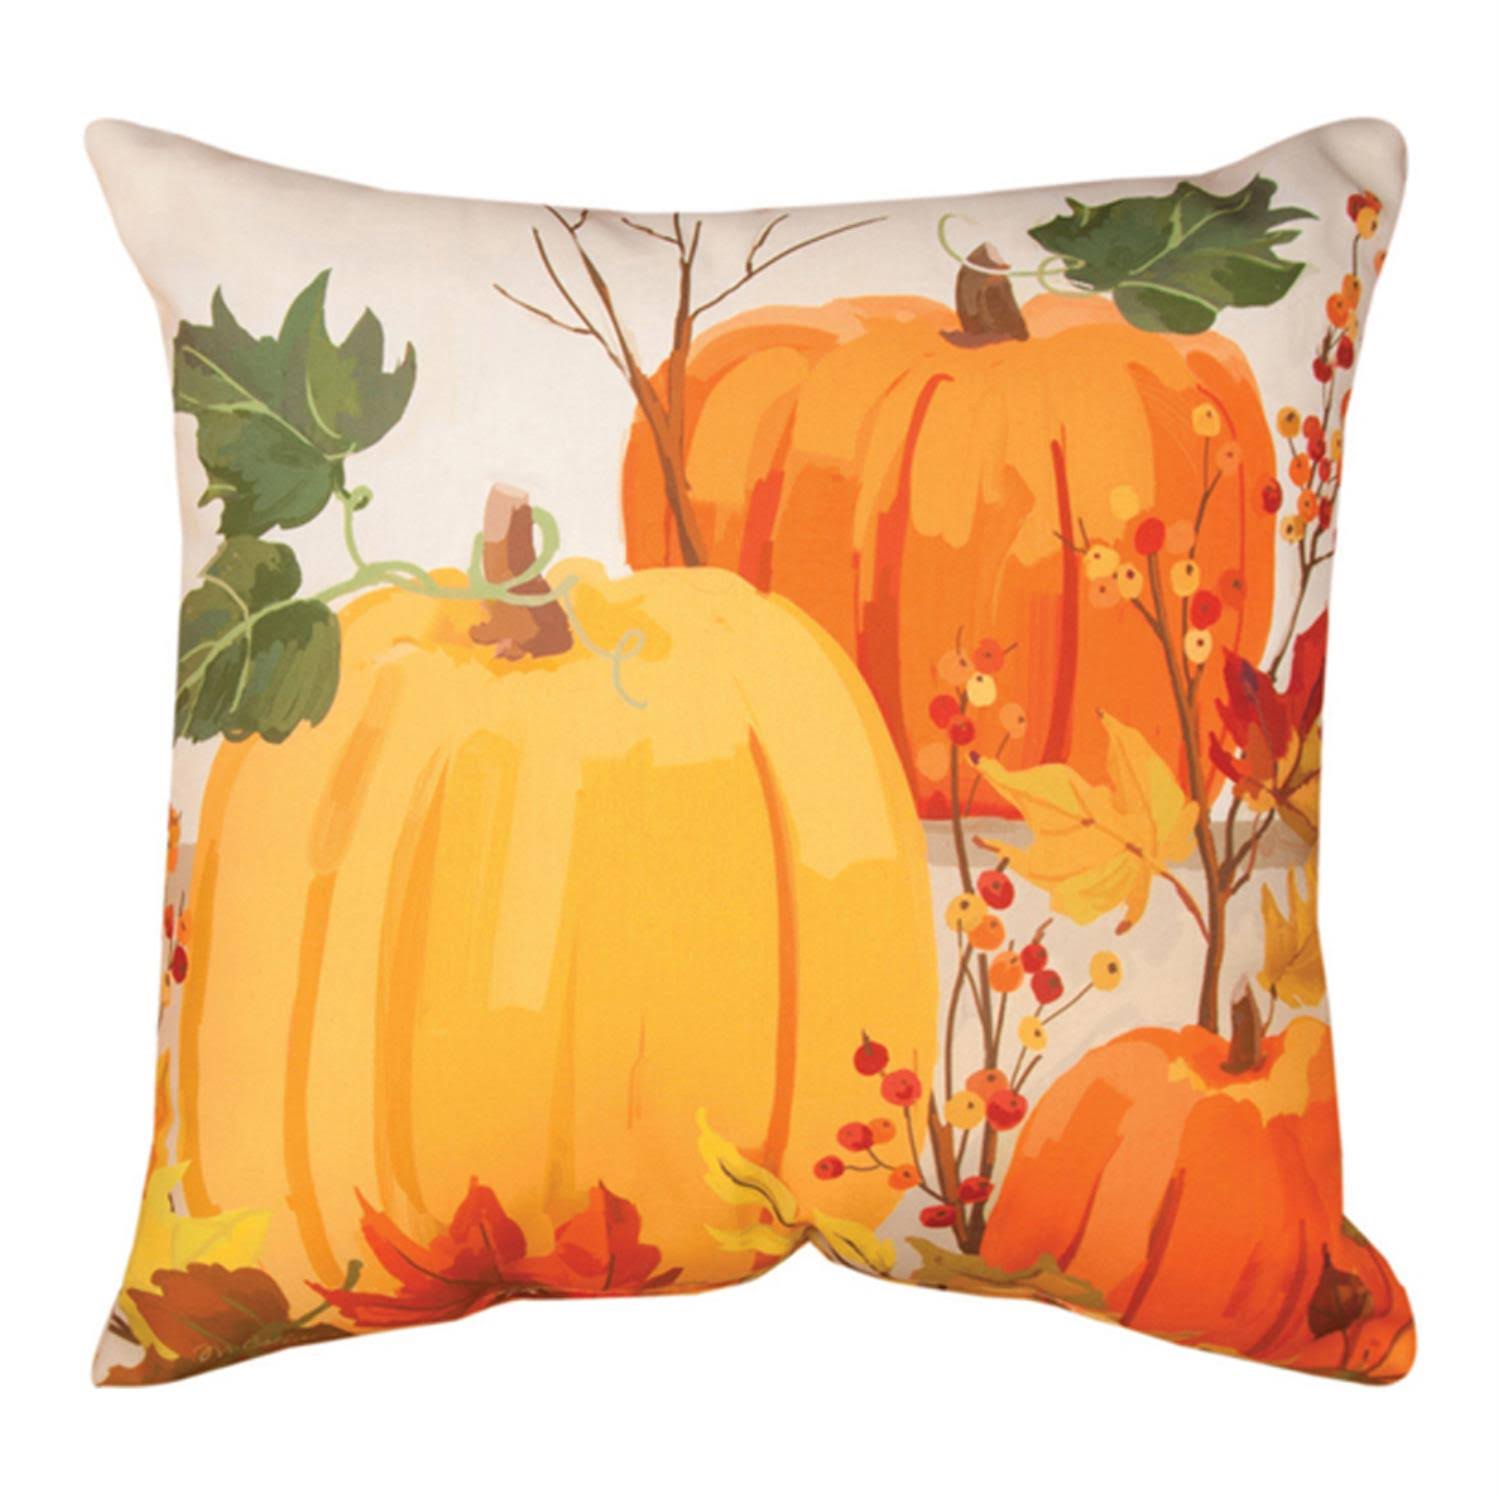 Manual Woodworkers & Weavers Indoor/Outdoor Throw Pillow, Fall Pumpkin